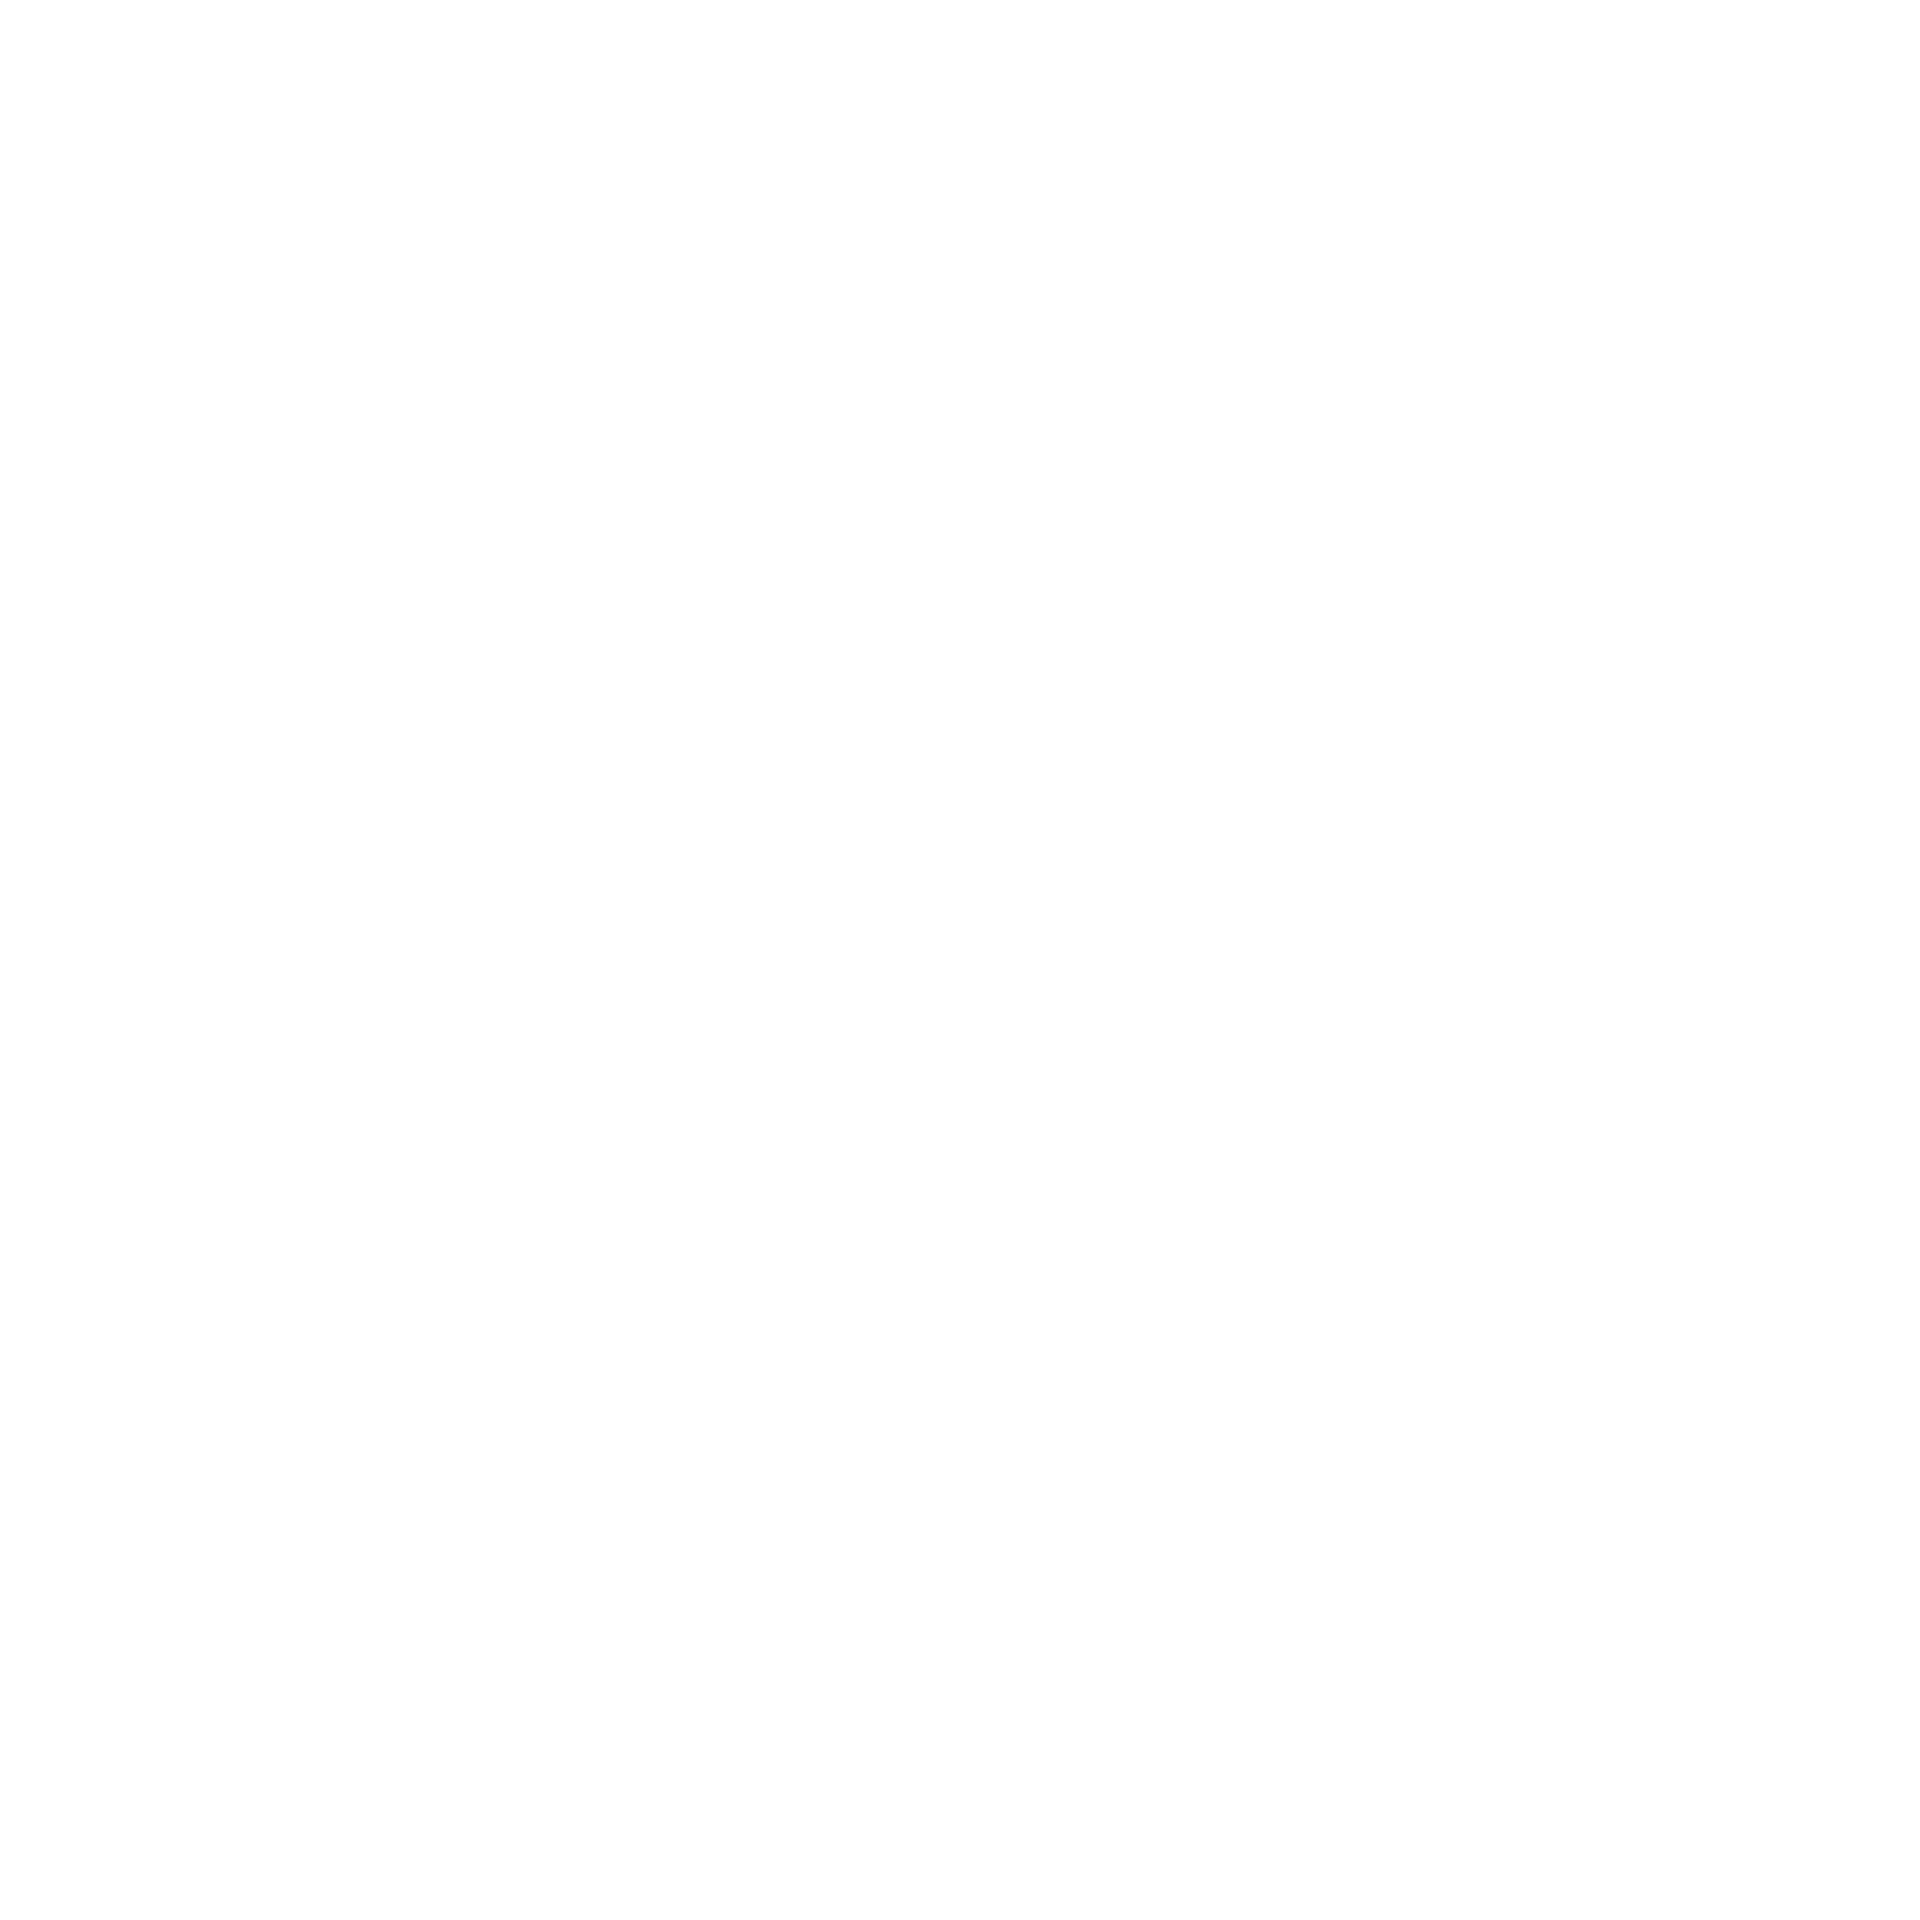 WFDF u23 2015 logo